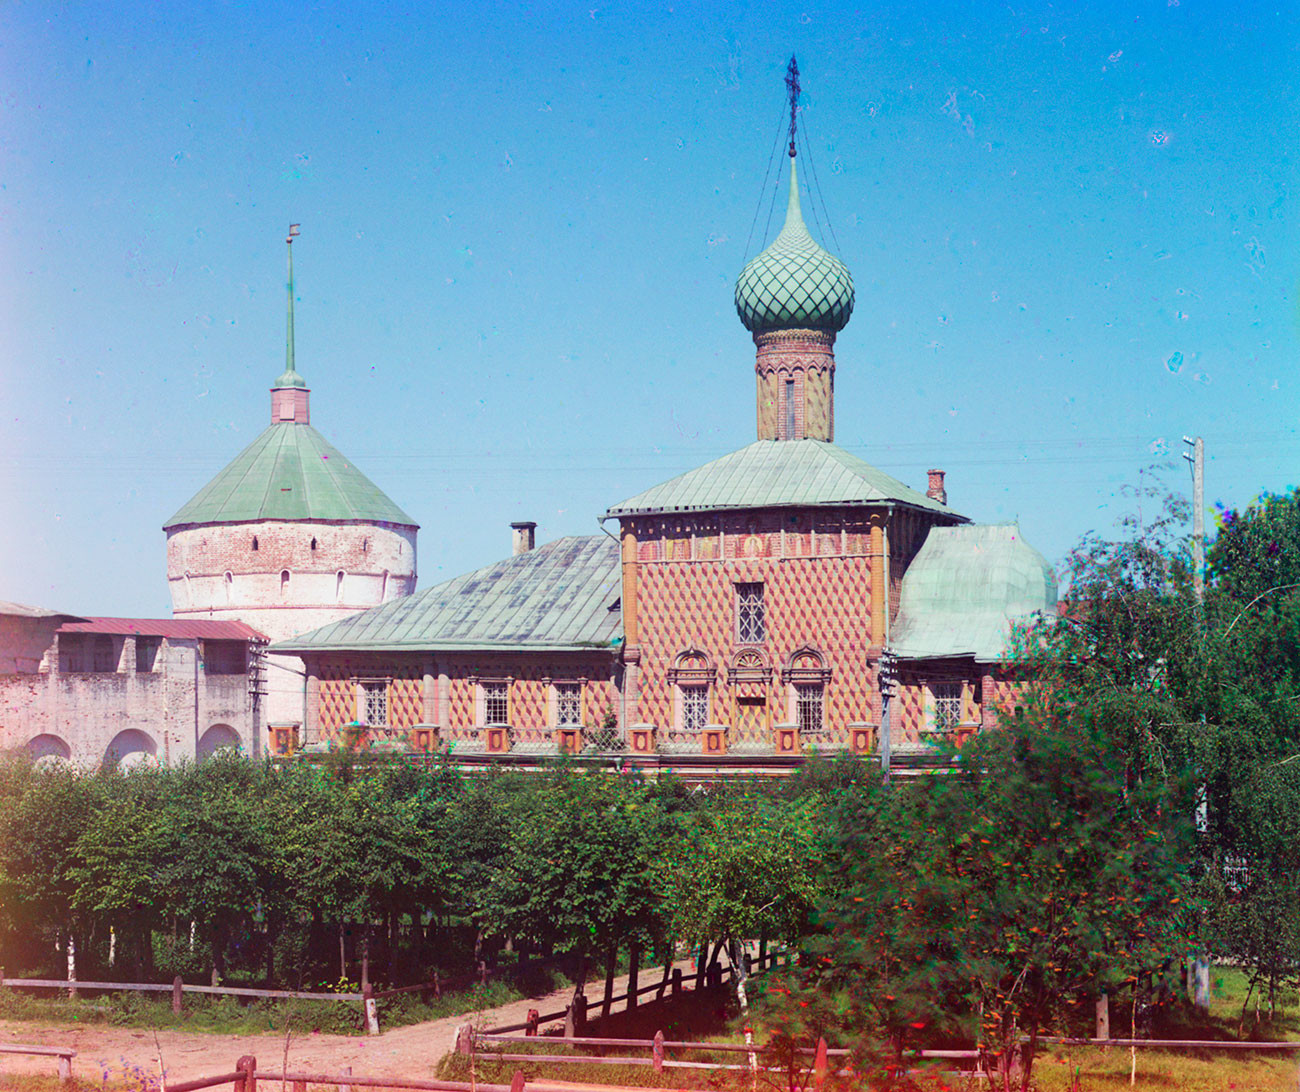 Kremlin de Rostov. Torre de la esquina noroeste e iglesia del Icono de Odighitria, vista sur. 12 de julio de 2012. Verano de 1911.